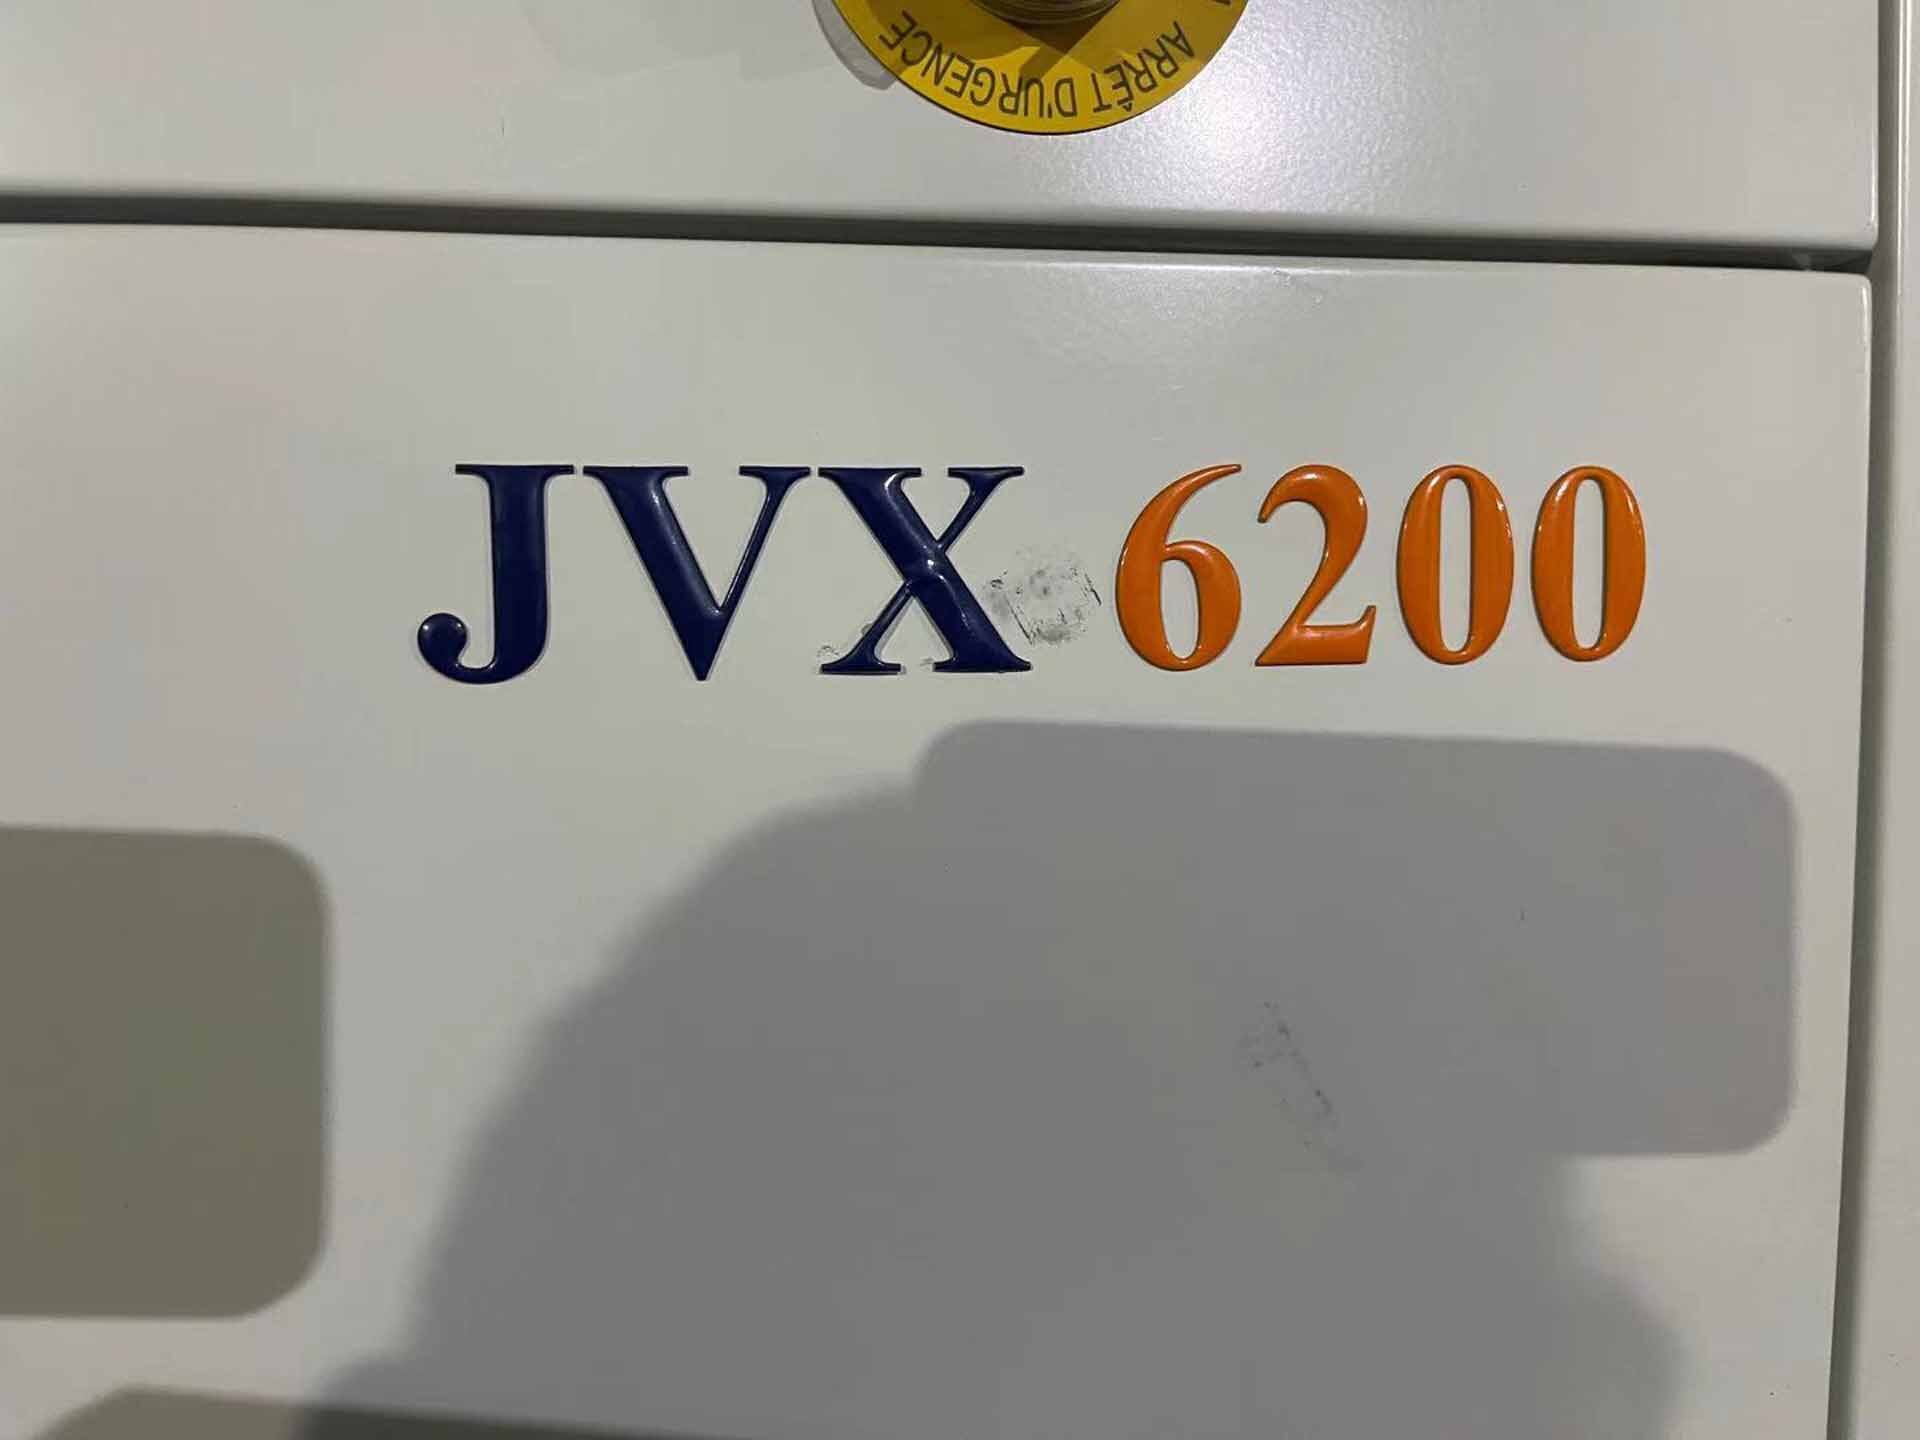 图为 已使用的 JORDAN VALLEY JVX 6200 待售